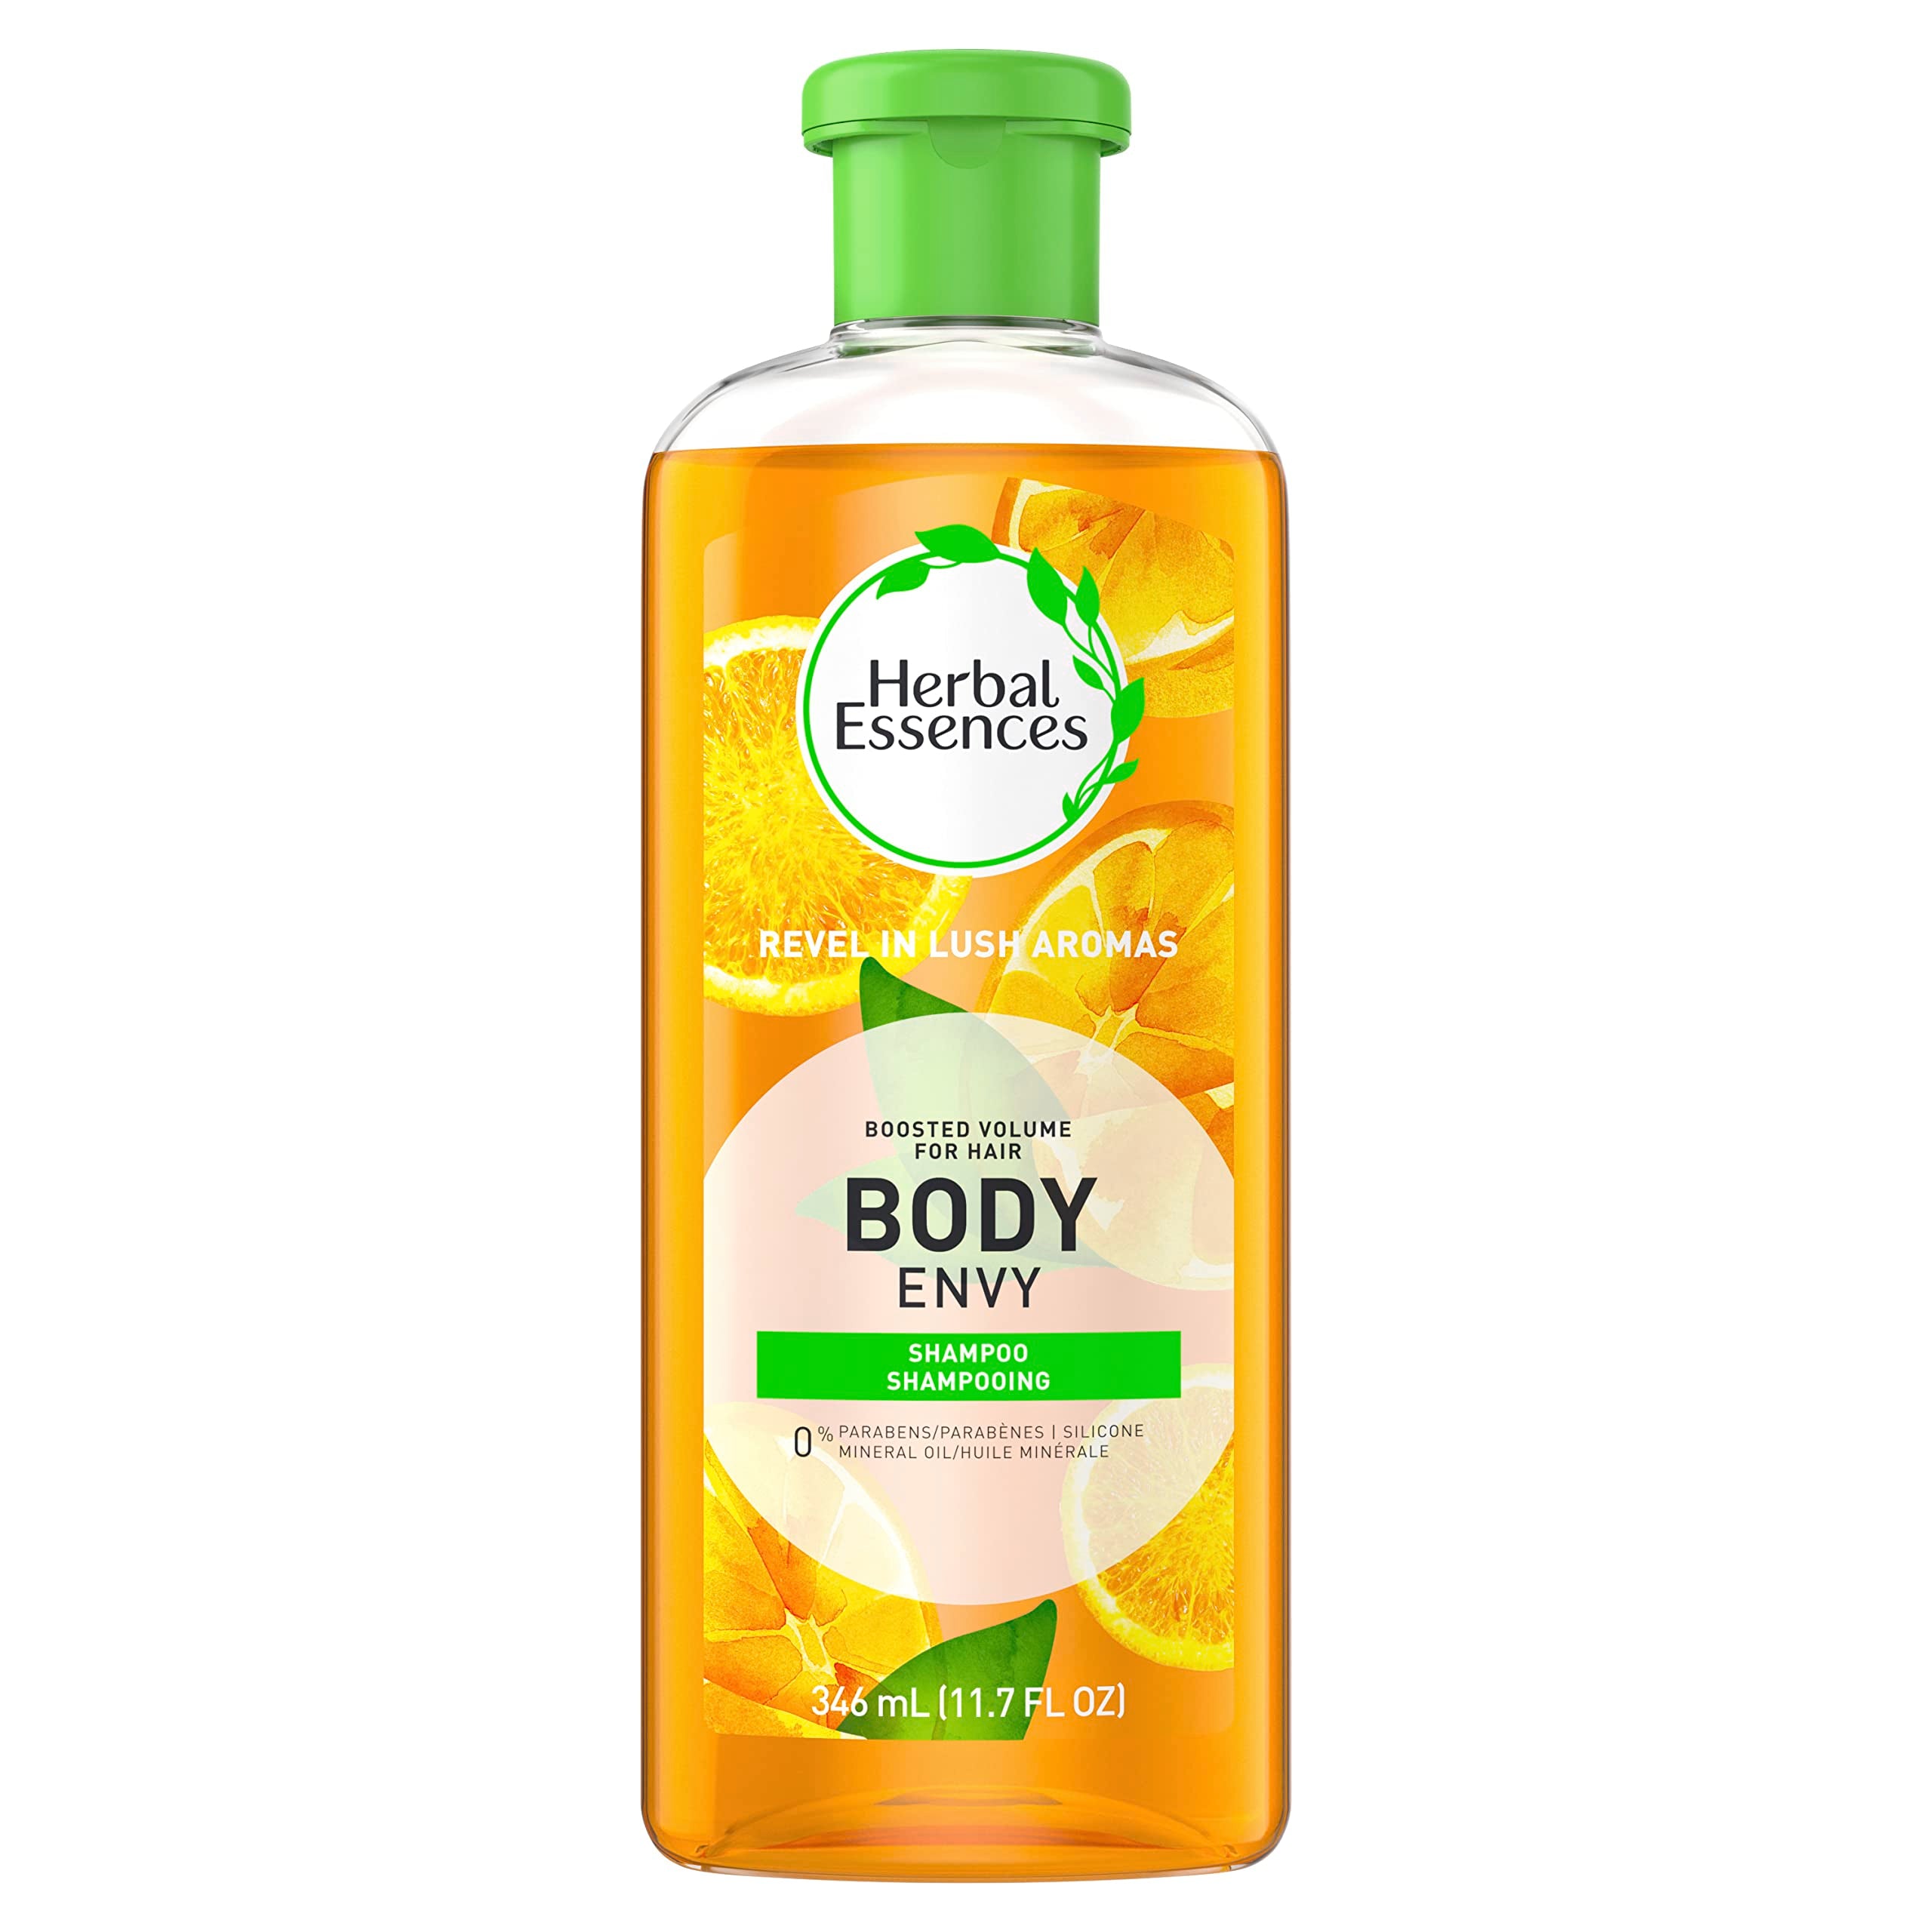 Herbal Essences Herbal essences body envy shampoo & body wash, volumizing shampoo, 11.7 fl Ounce, 11.7 Fl Ounce